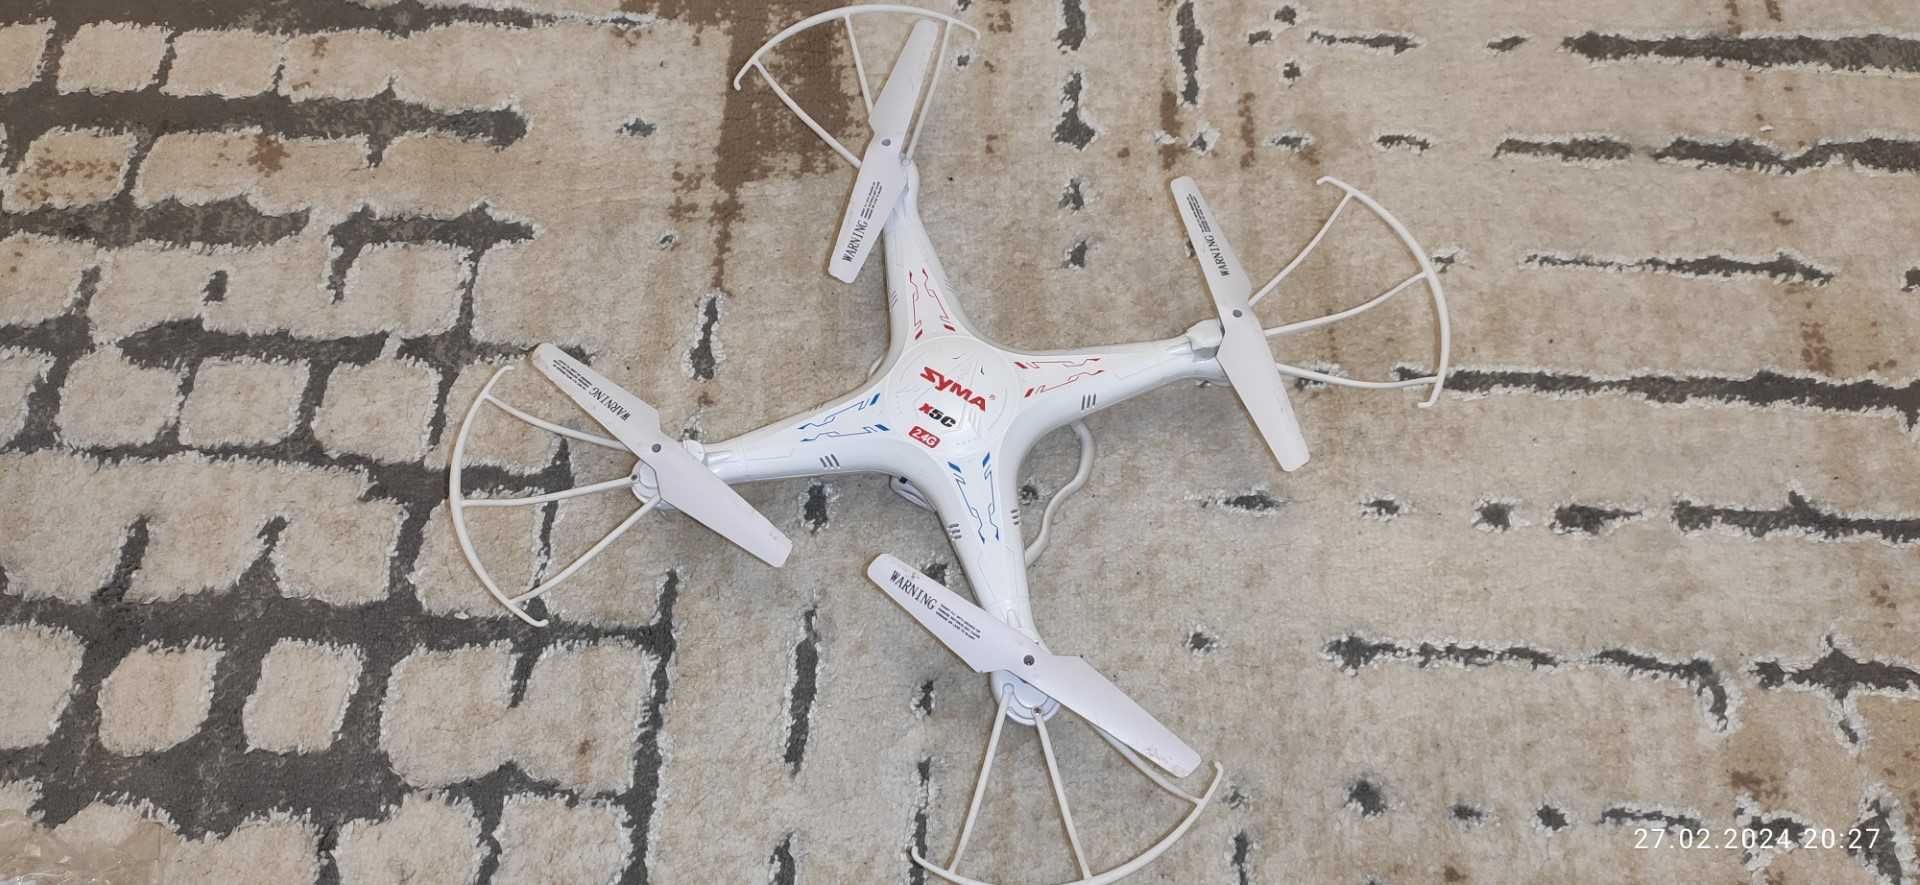 Dron Syma X5C-1 upgraded version SPRAWNY